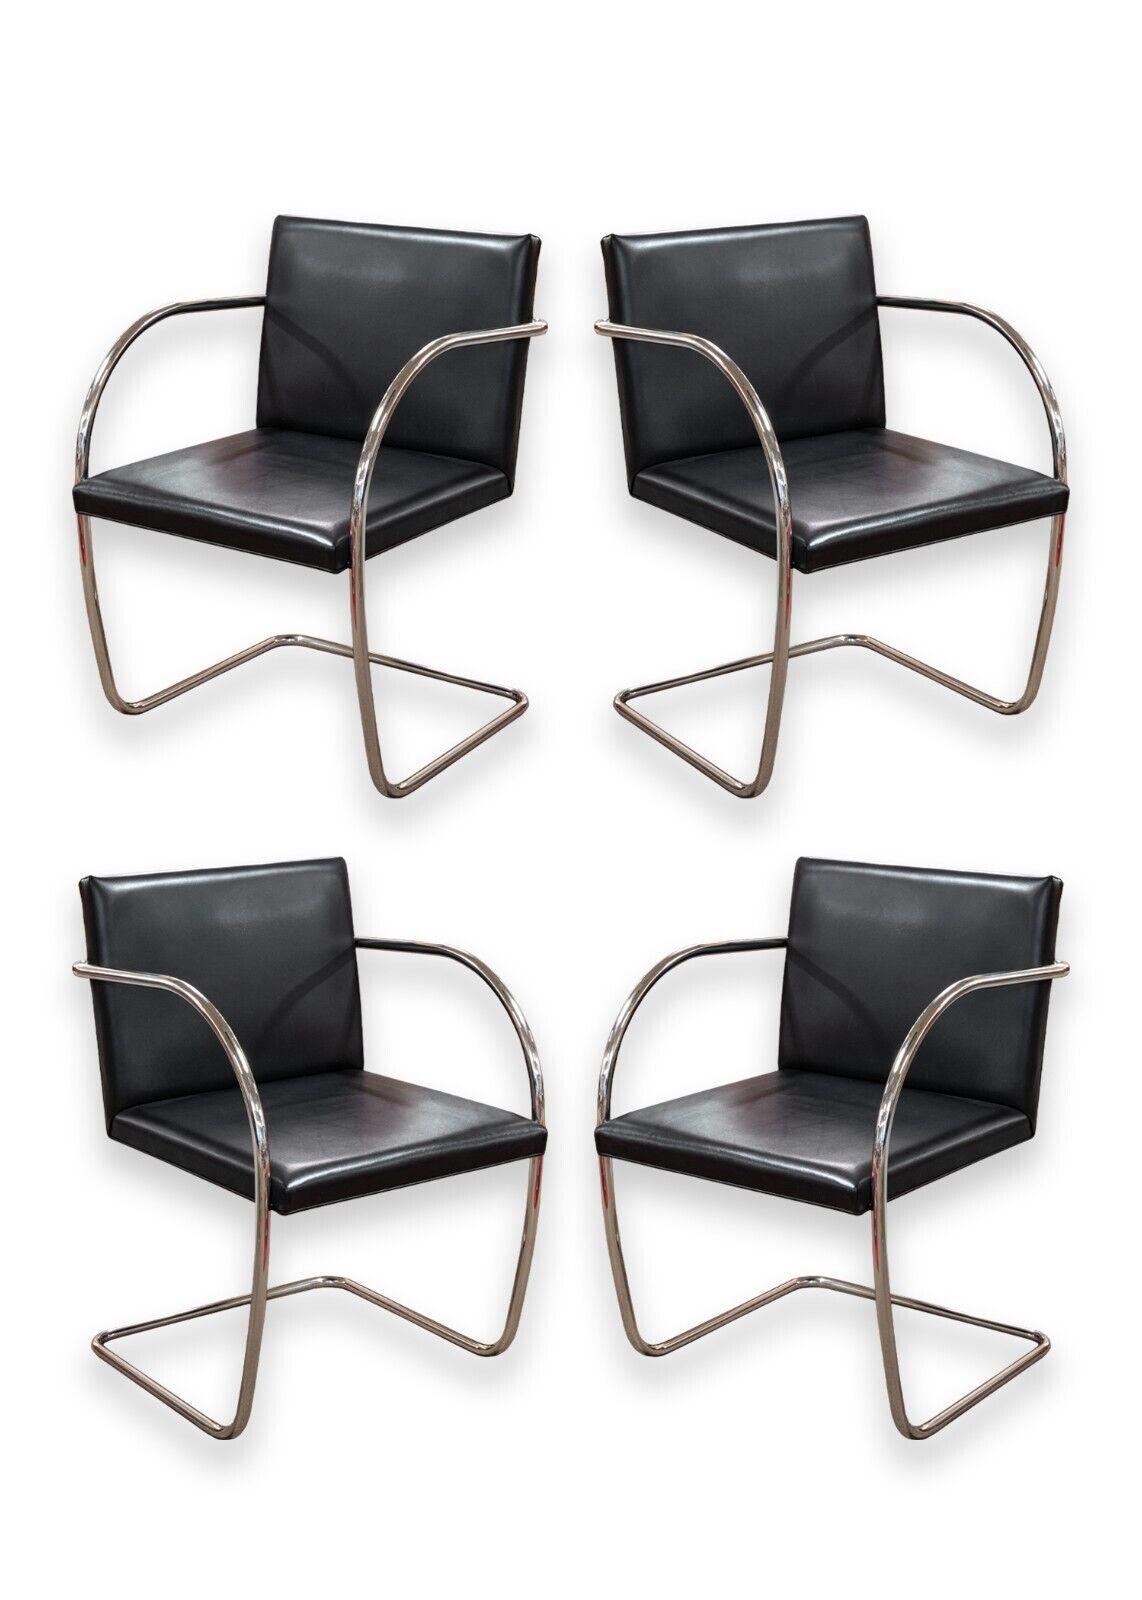 Ensemble de 4 chaises Brno tubulaires en cuir noir. Un magnifique ensemble de chaises classiques du légendaire designer Mies van der Rohe pour Knoll. Ces chaises emblématiques sont dotées d'une assise et d'un dossier rectangulaires simples en cuir